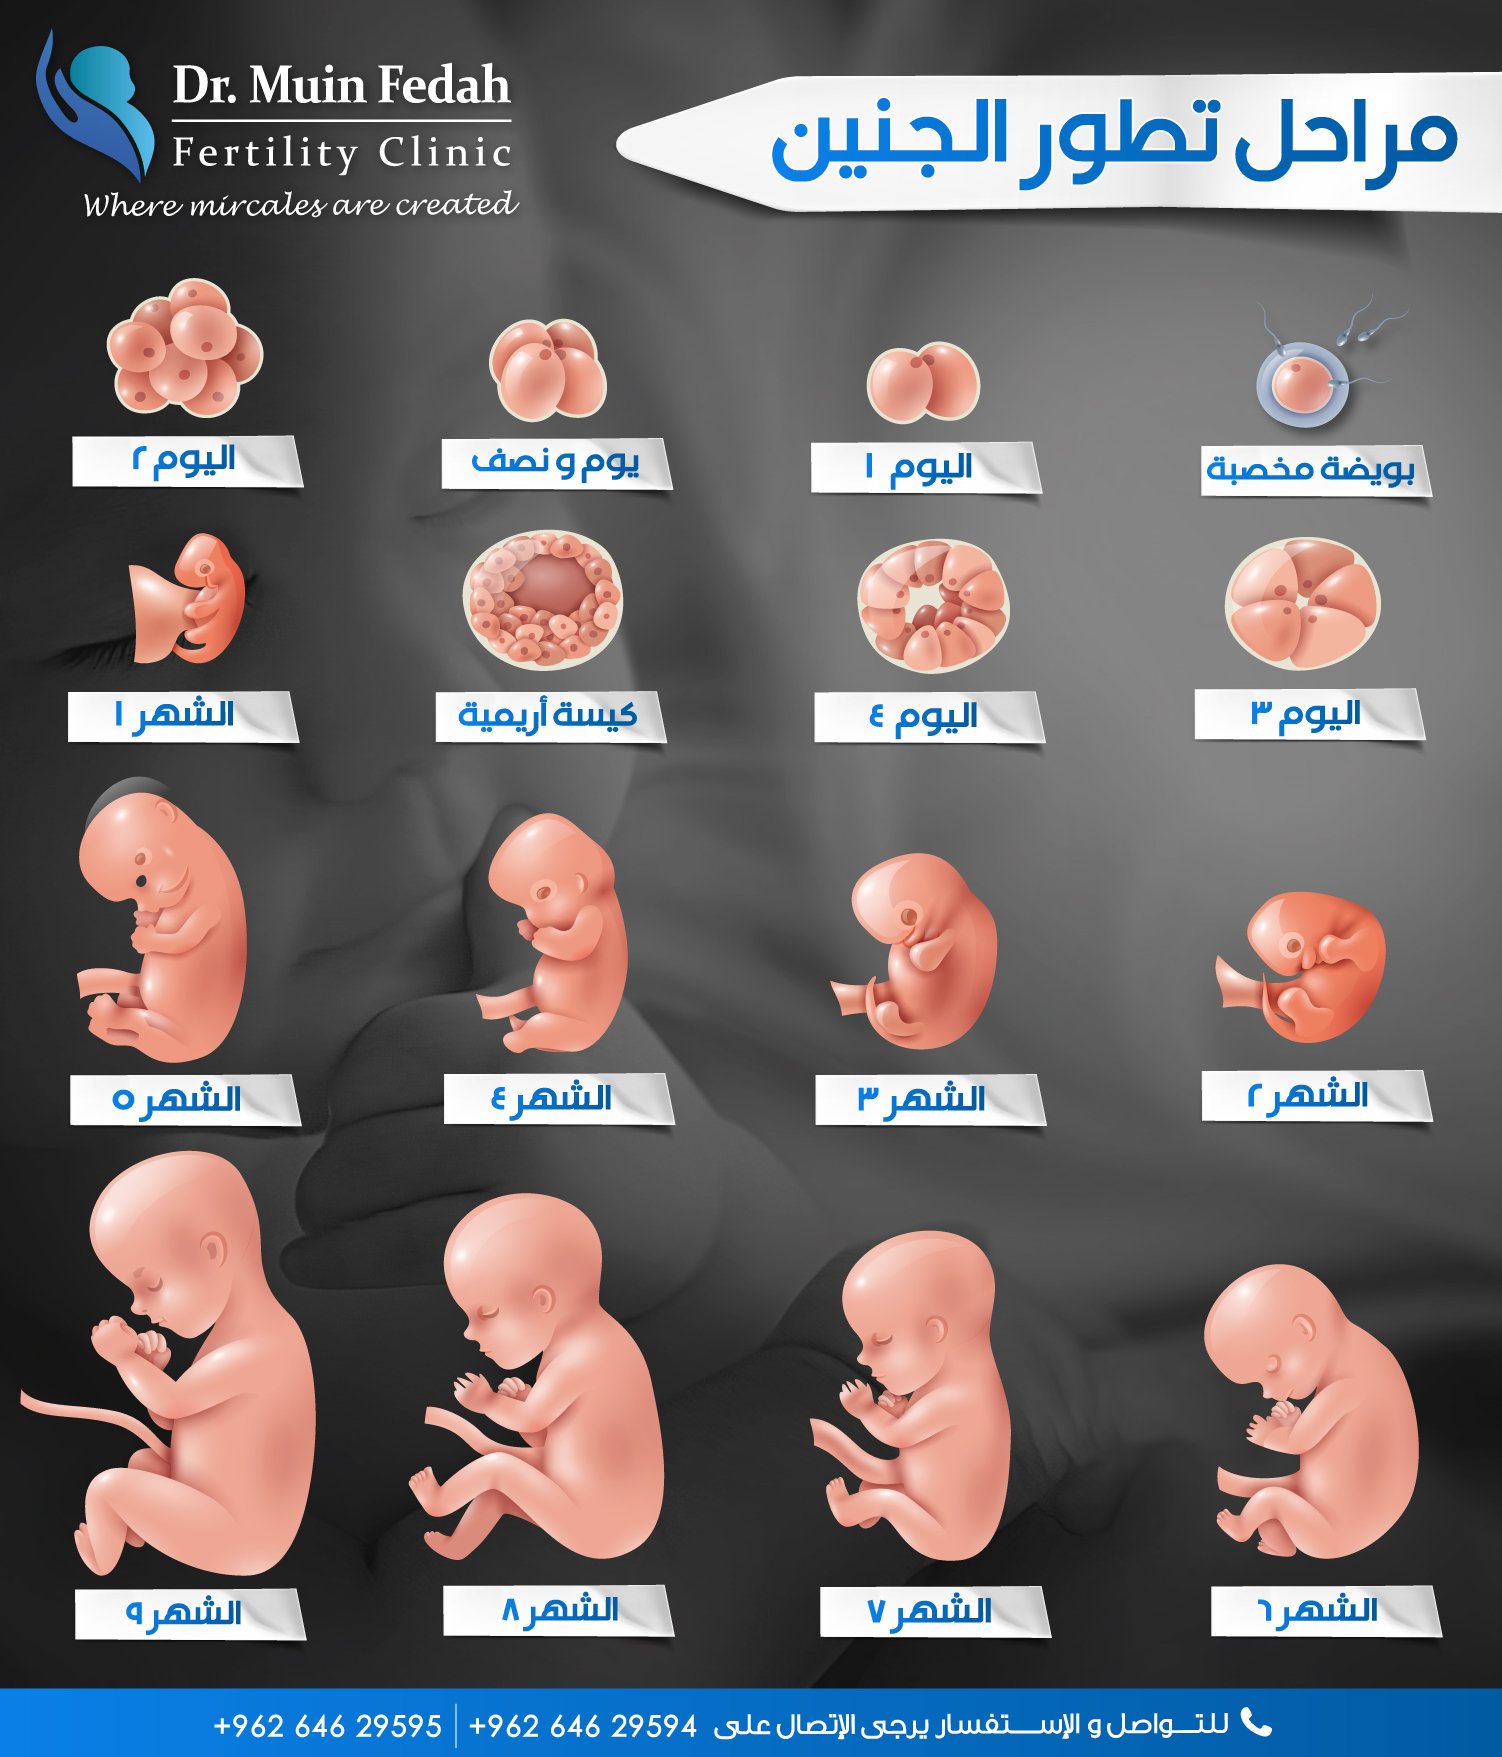 Dr.Muin Fedah on Twitter: "مراحل تطور الجنين 💙 https://t.co/ZaEAO1m1kw" /  Twitter